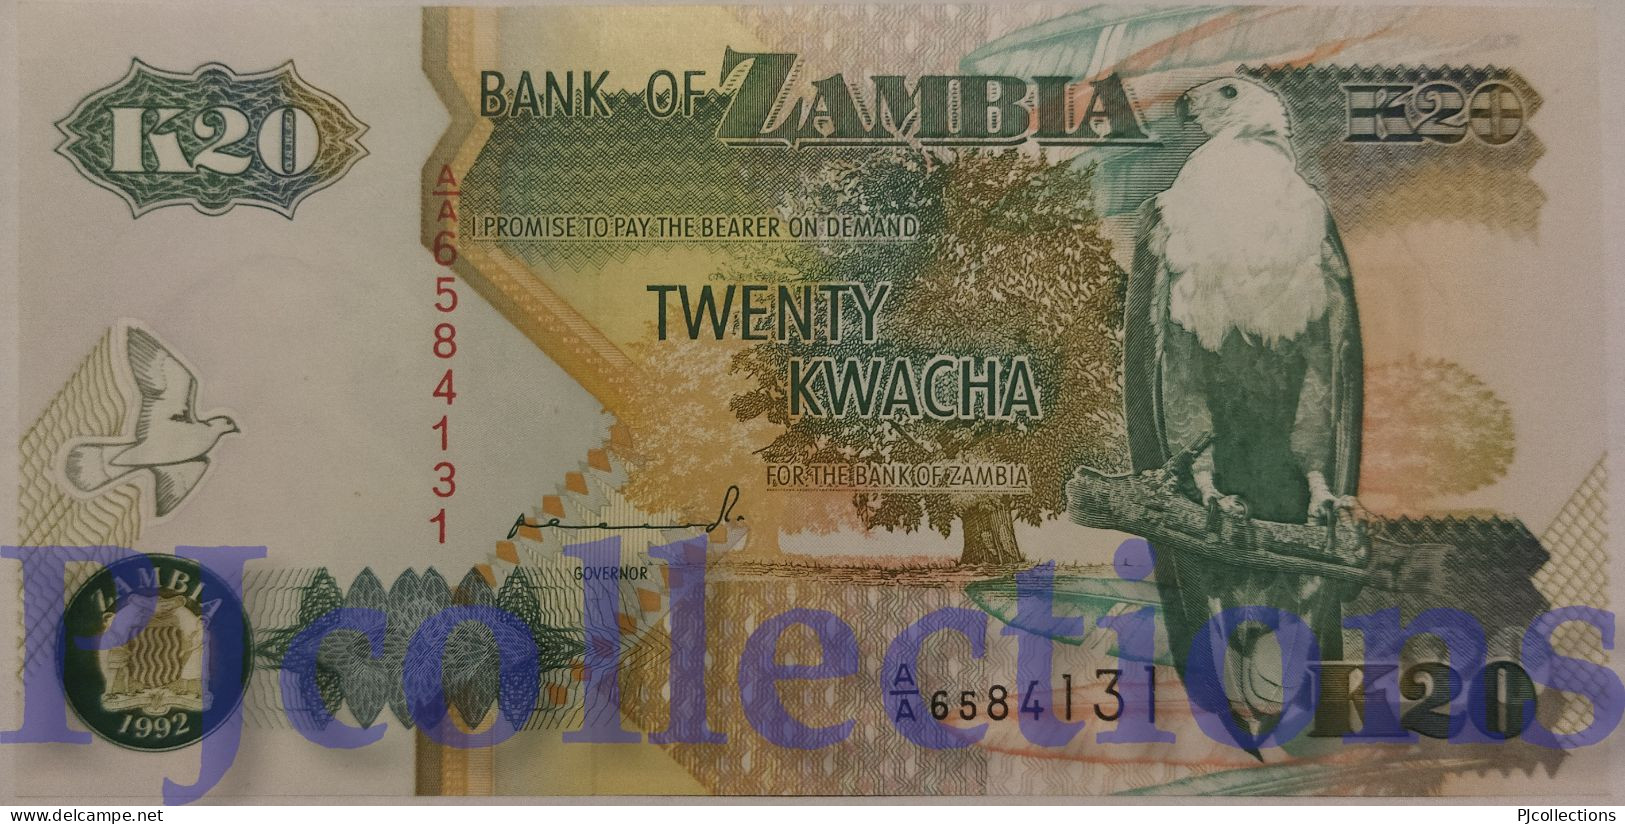 ZAMBIA 20 KWACHA 1992 PICK 36a UNC PREFIX "AA" - Zambie